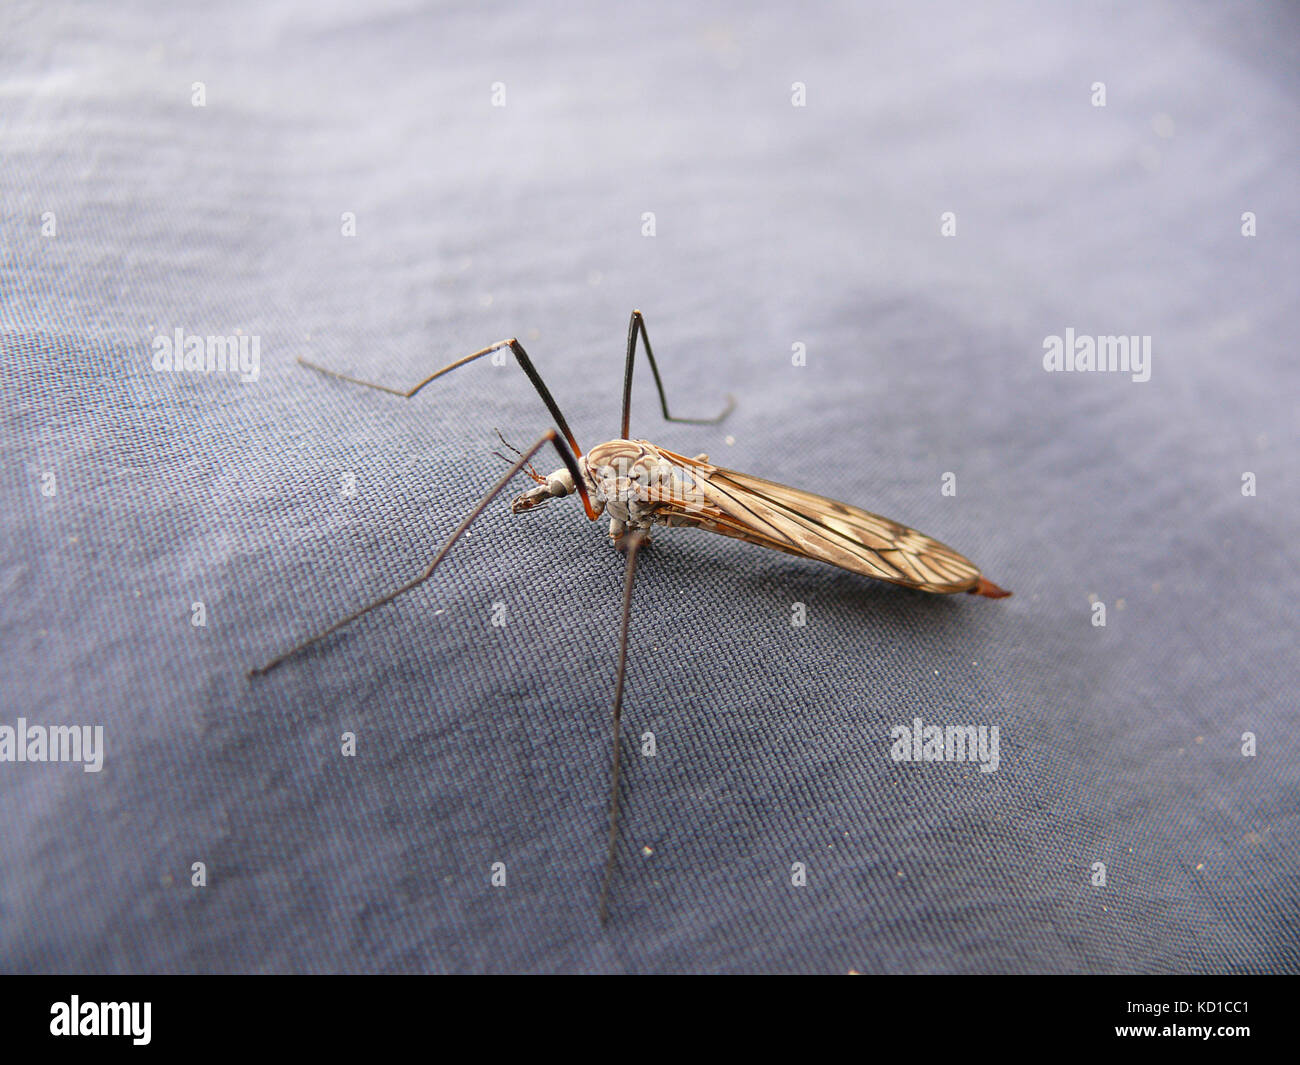 The sucking mosquito Stock Photo